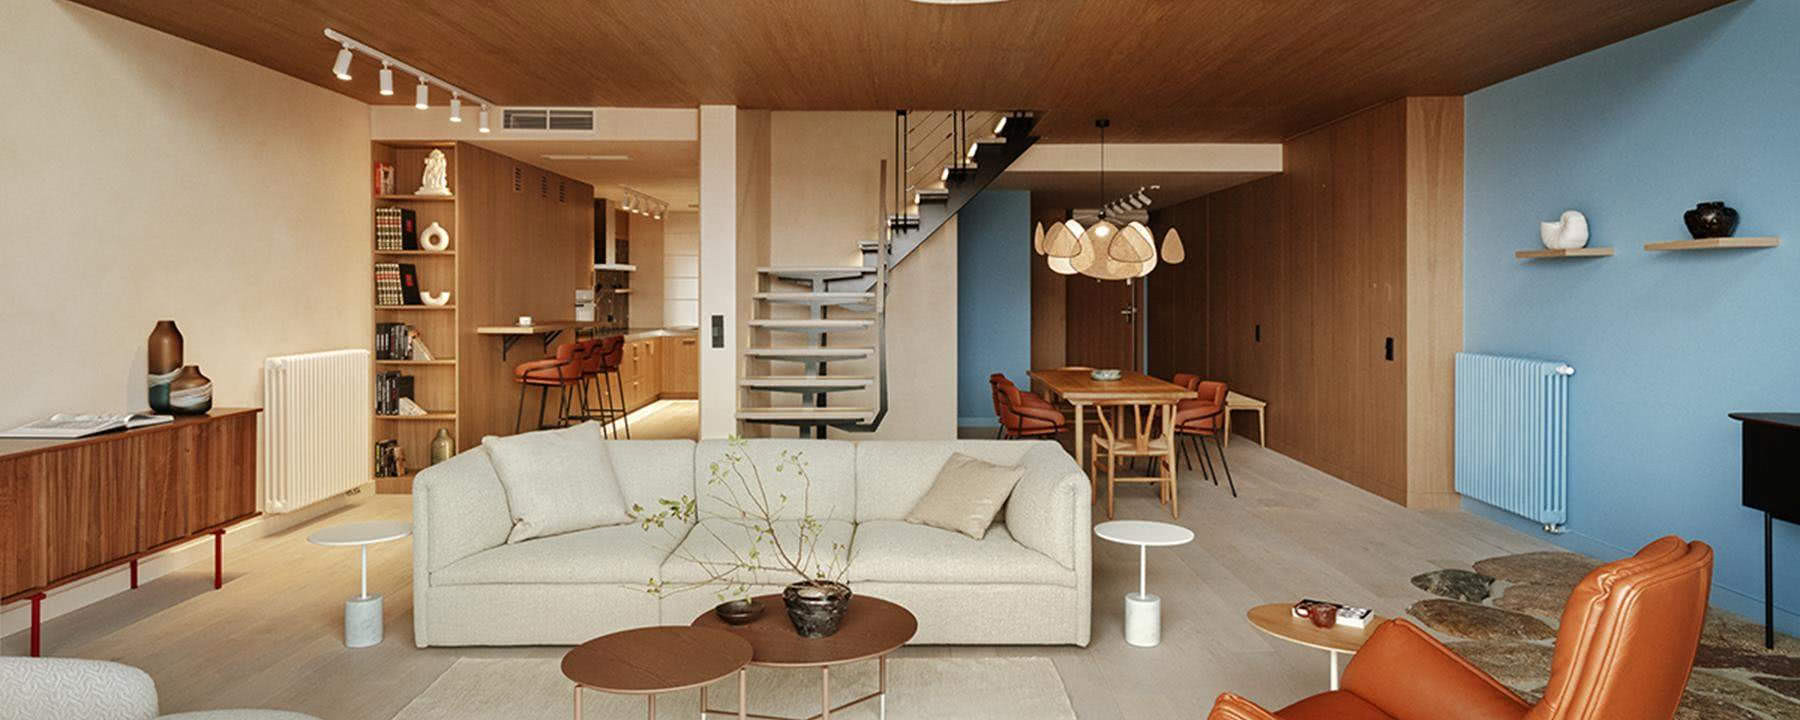 Wakacyjny apartament inspirowany Japonią. Ma widok na gdańską starówkę!